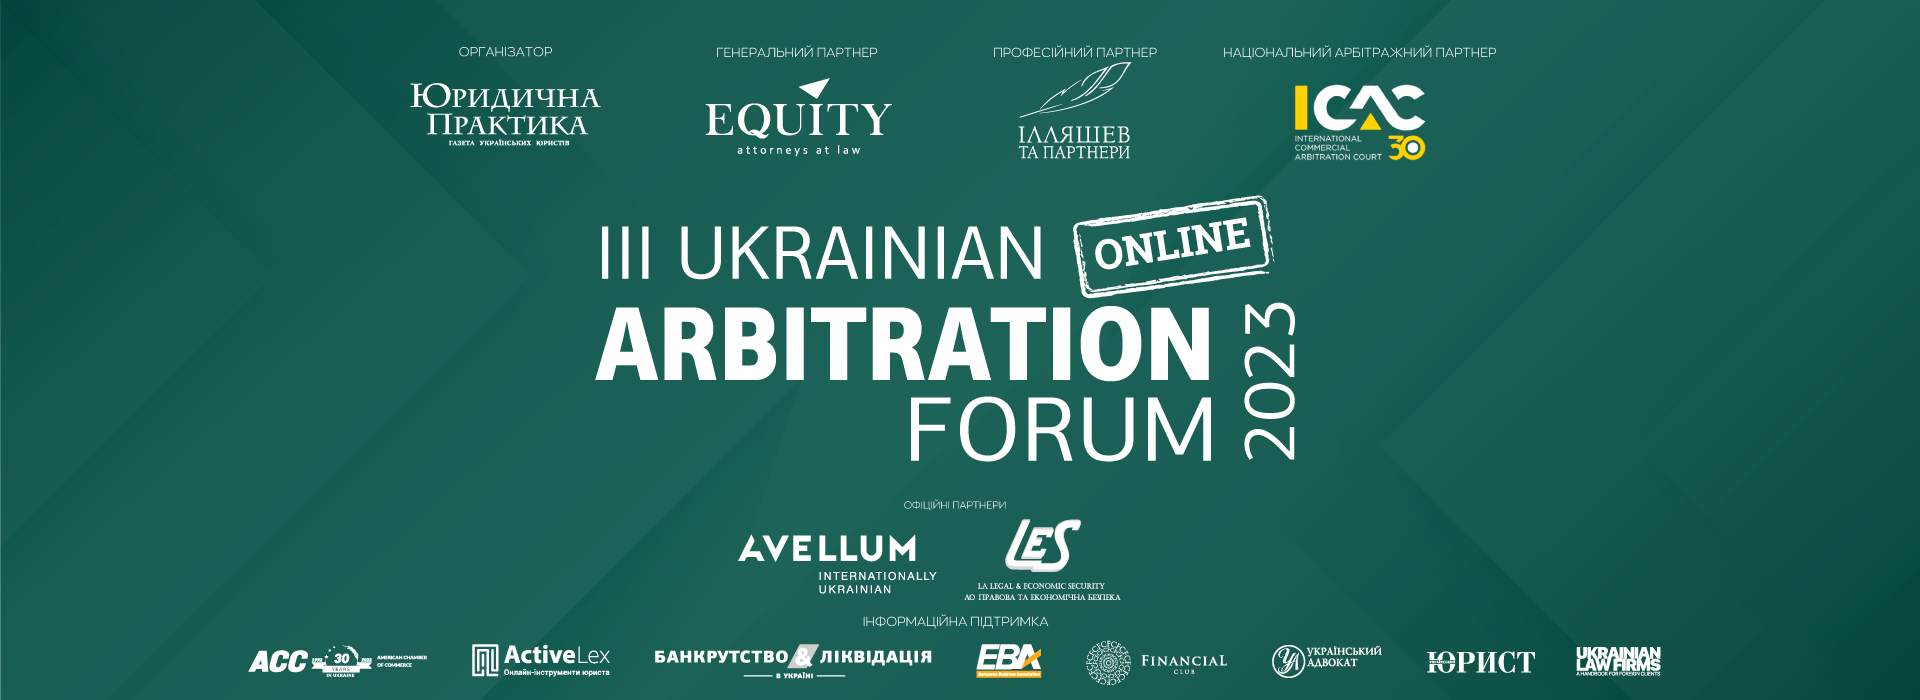 III Український арбітражний форум